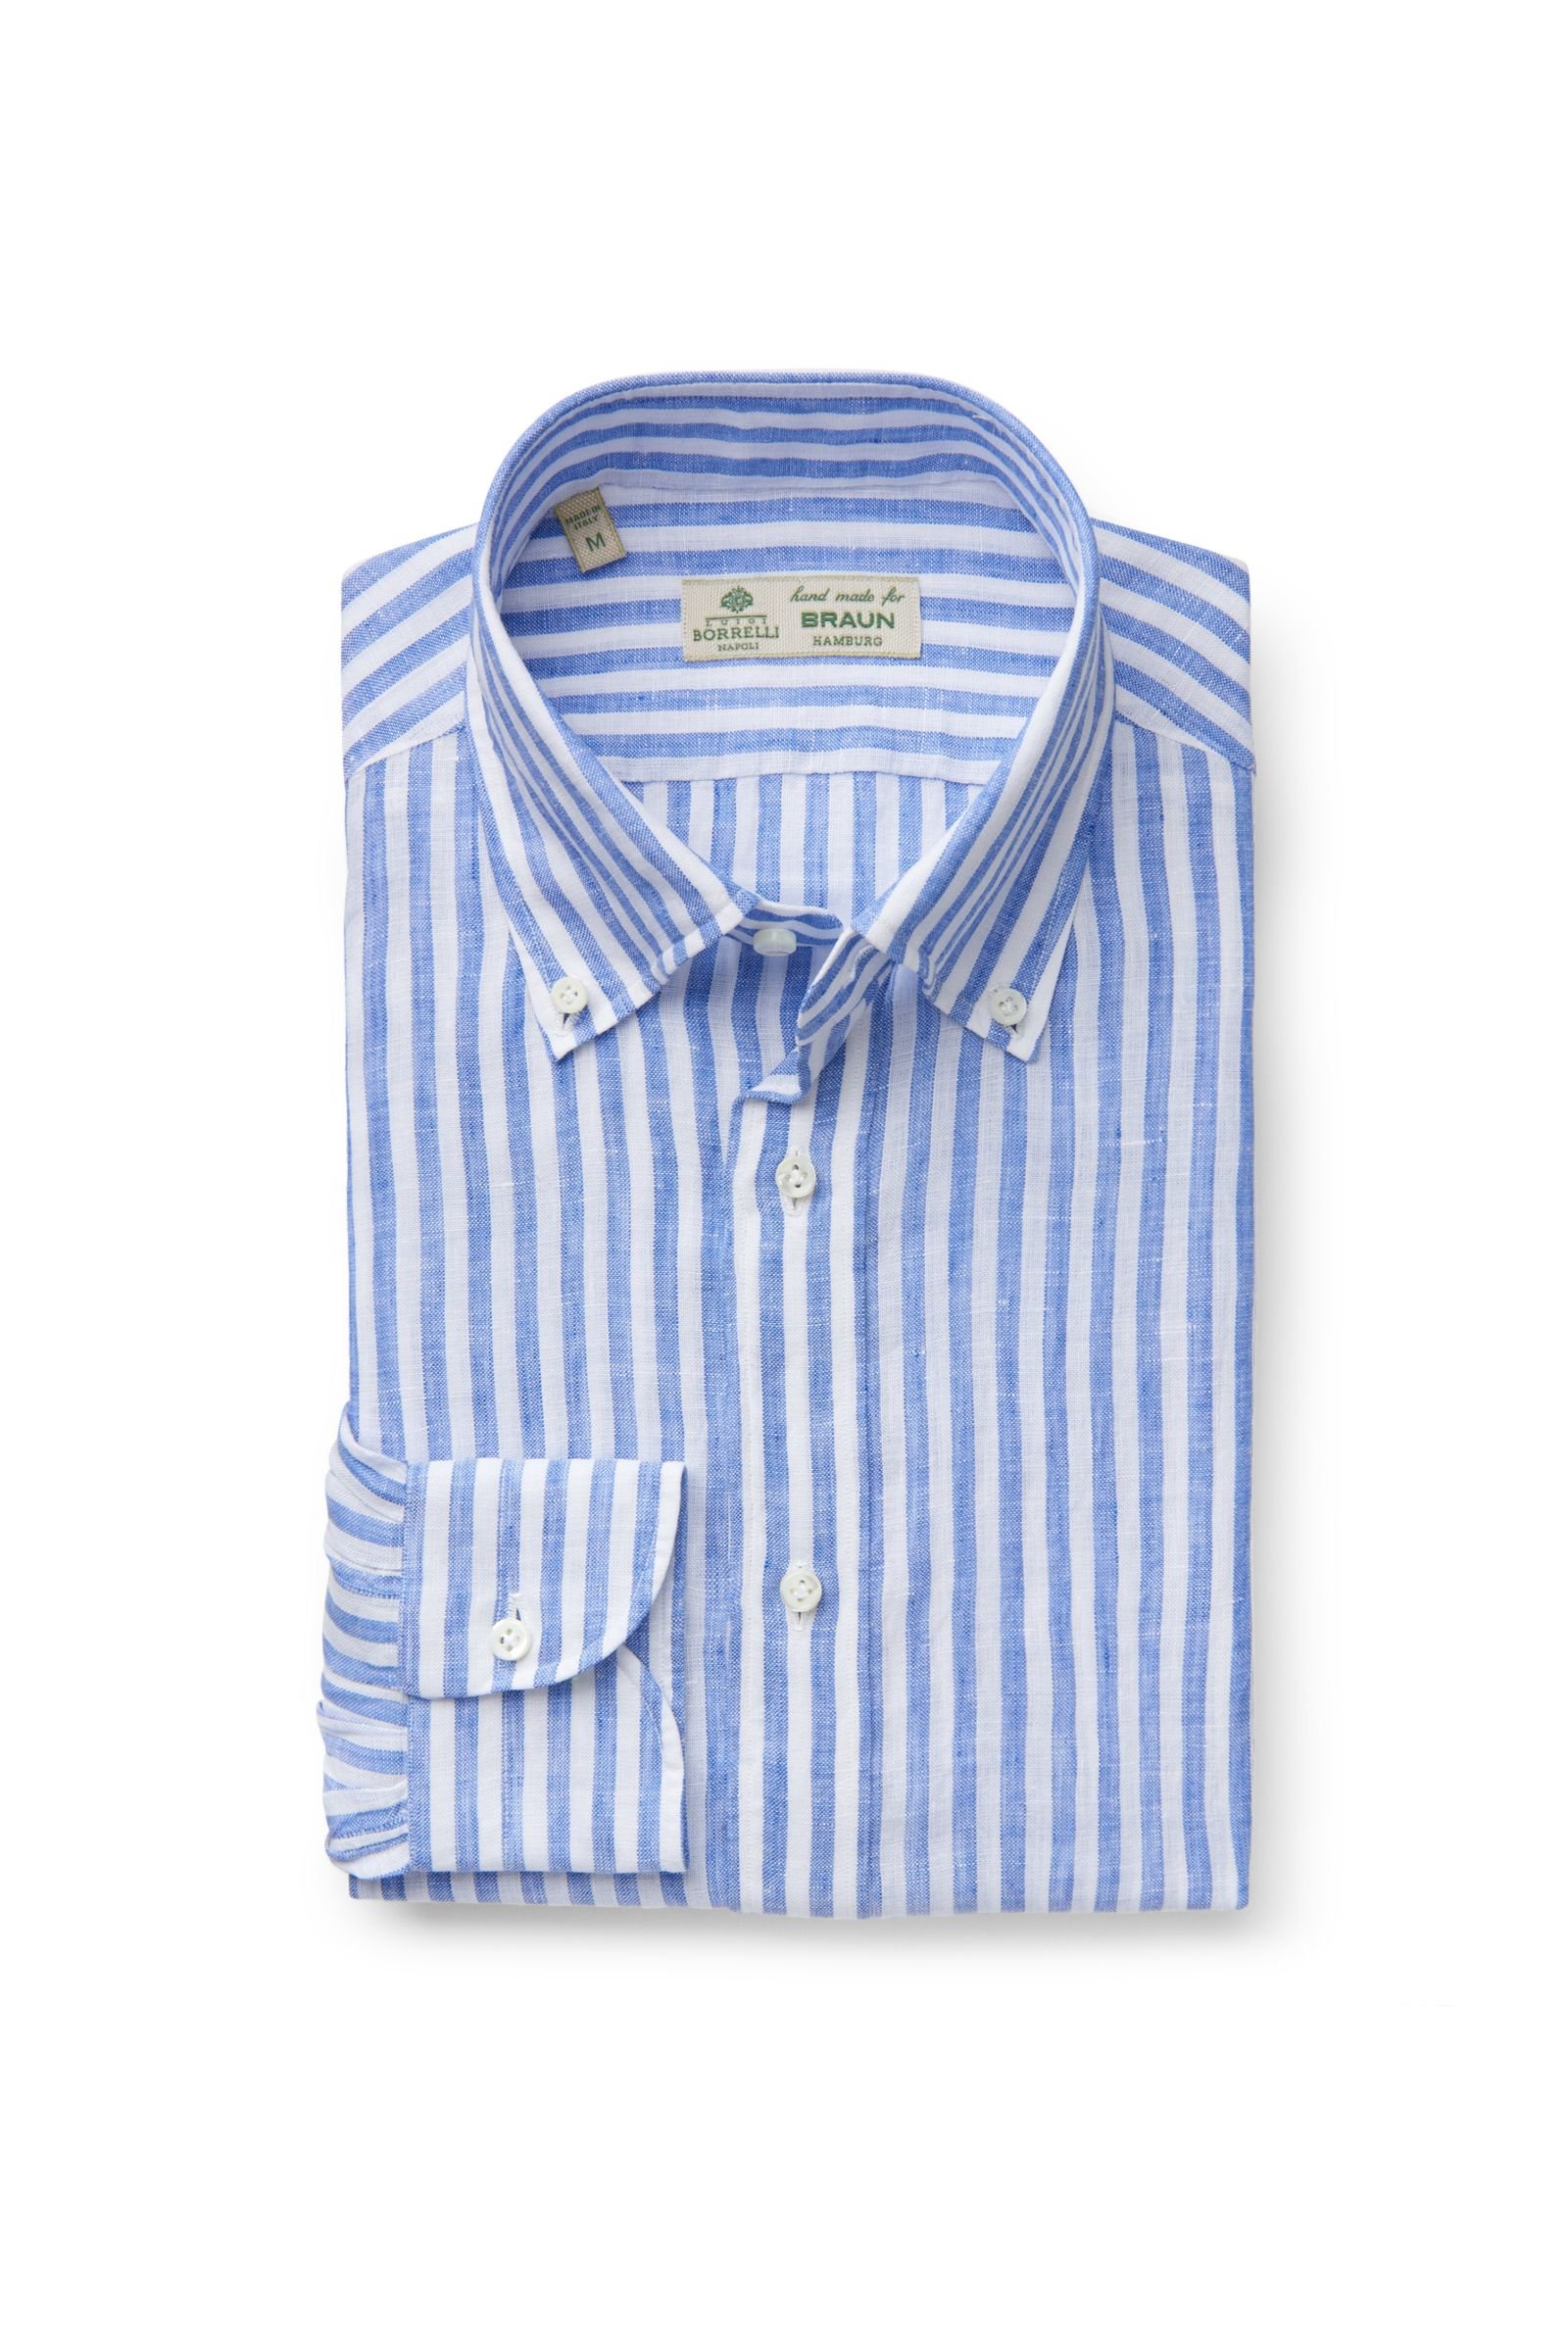 Leinenhemd 'Stefano' Button-Down-Kragen blau/weiß gestreift